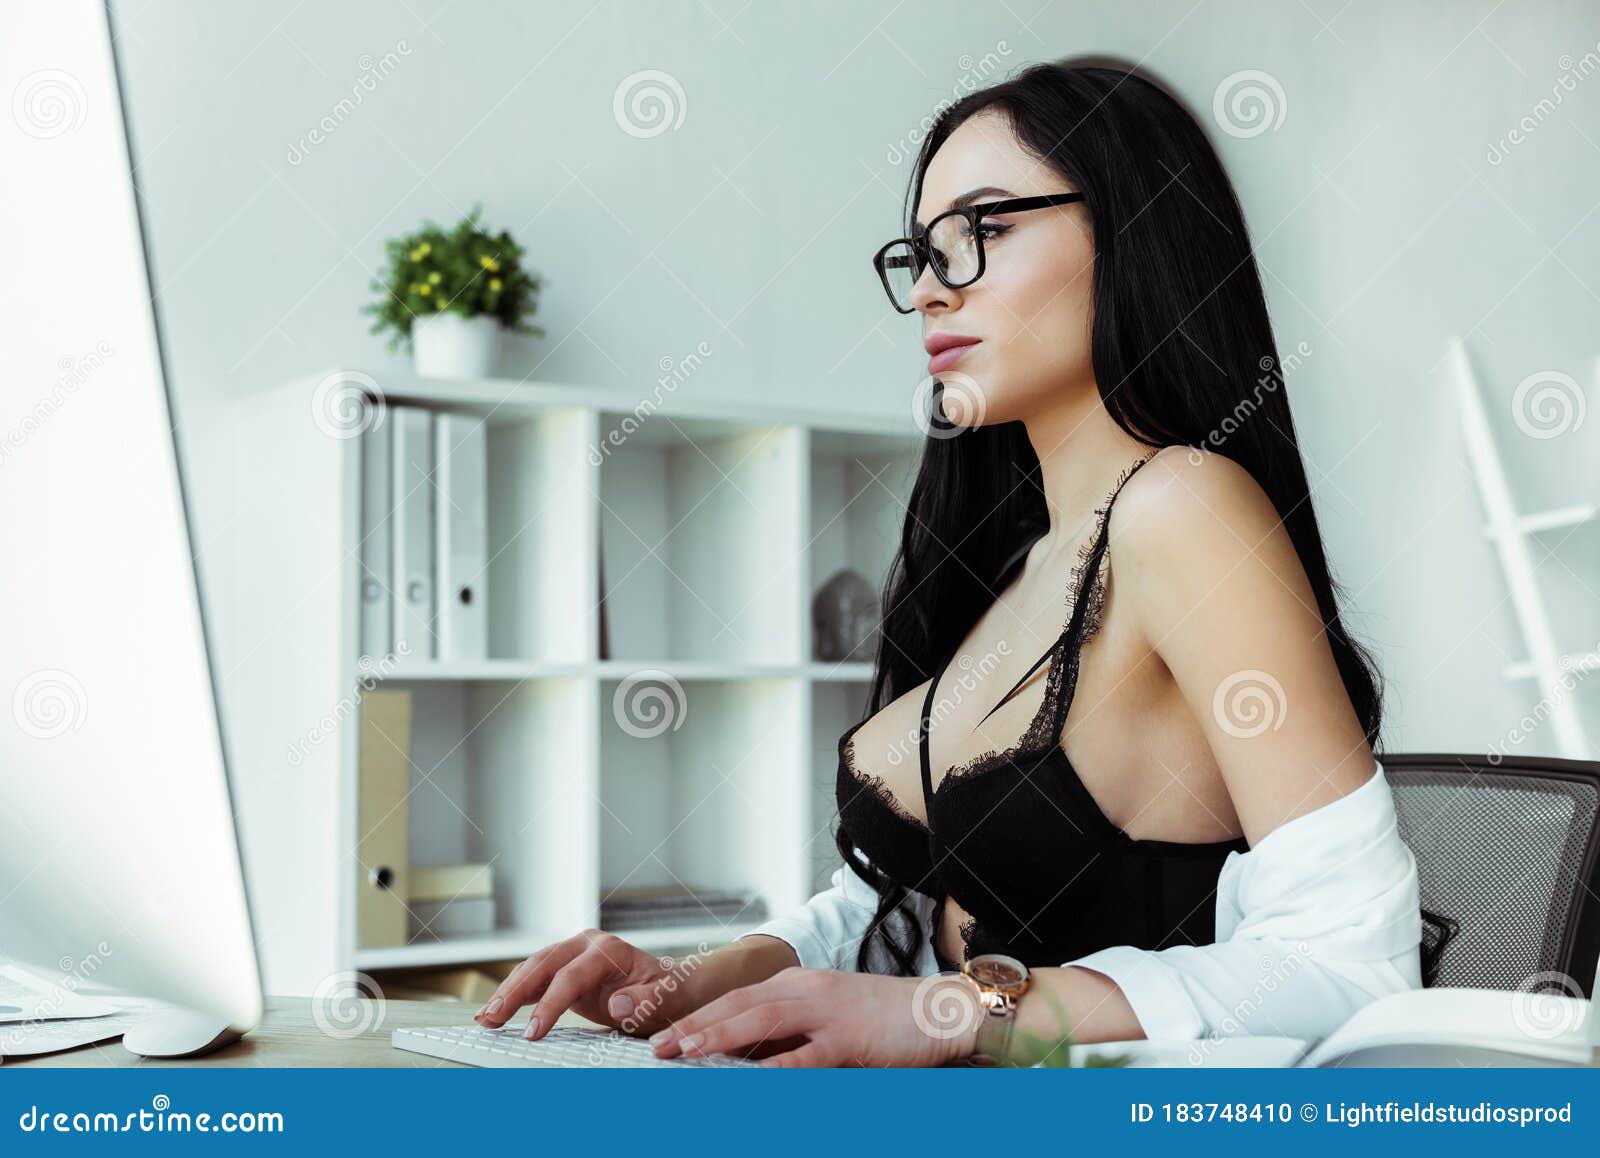 Sexy Secretary Stock Photo - Download Image Now - iStock